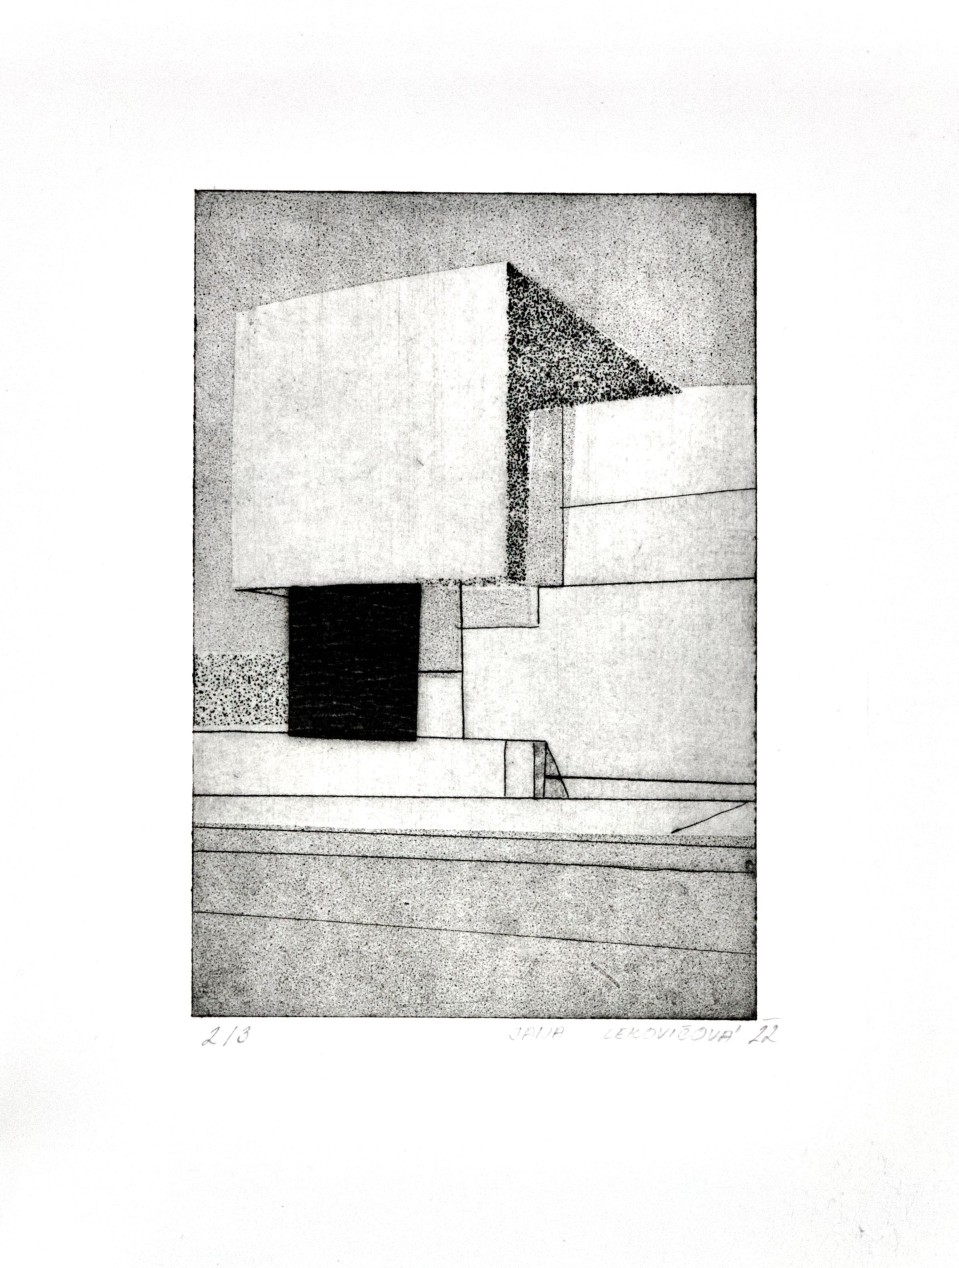 Obrázek díla Architektura od Jana Lekovičová